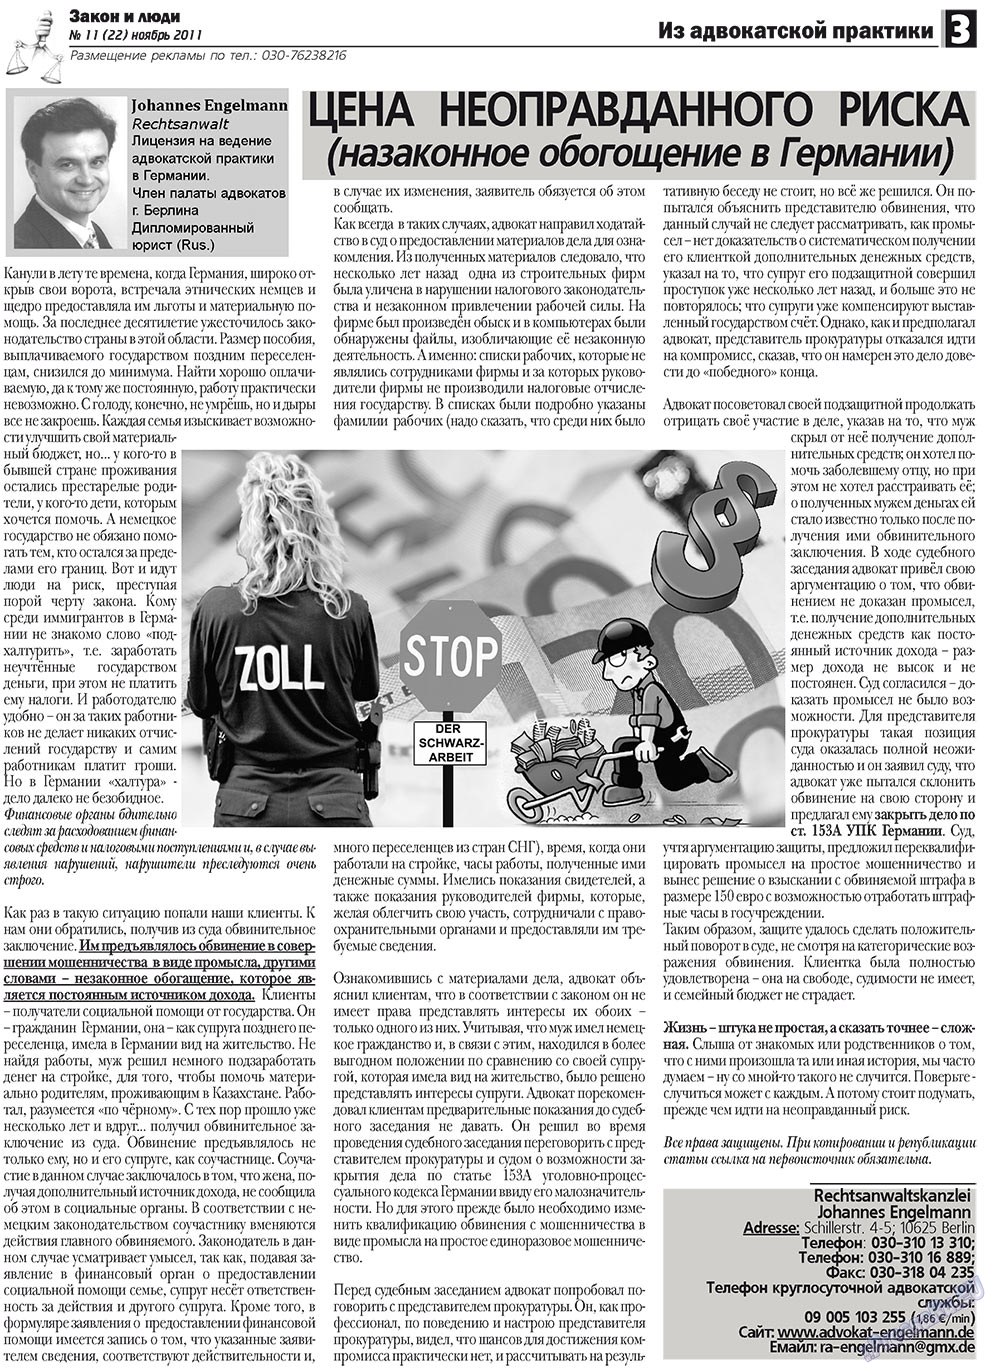 Закон и люди, газета. 2011 №11 стр.3